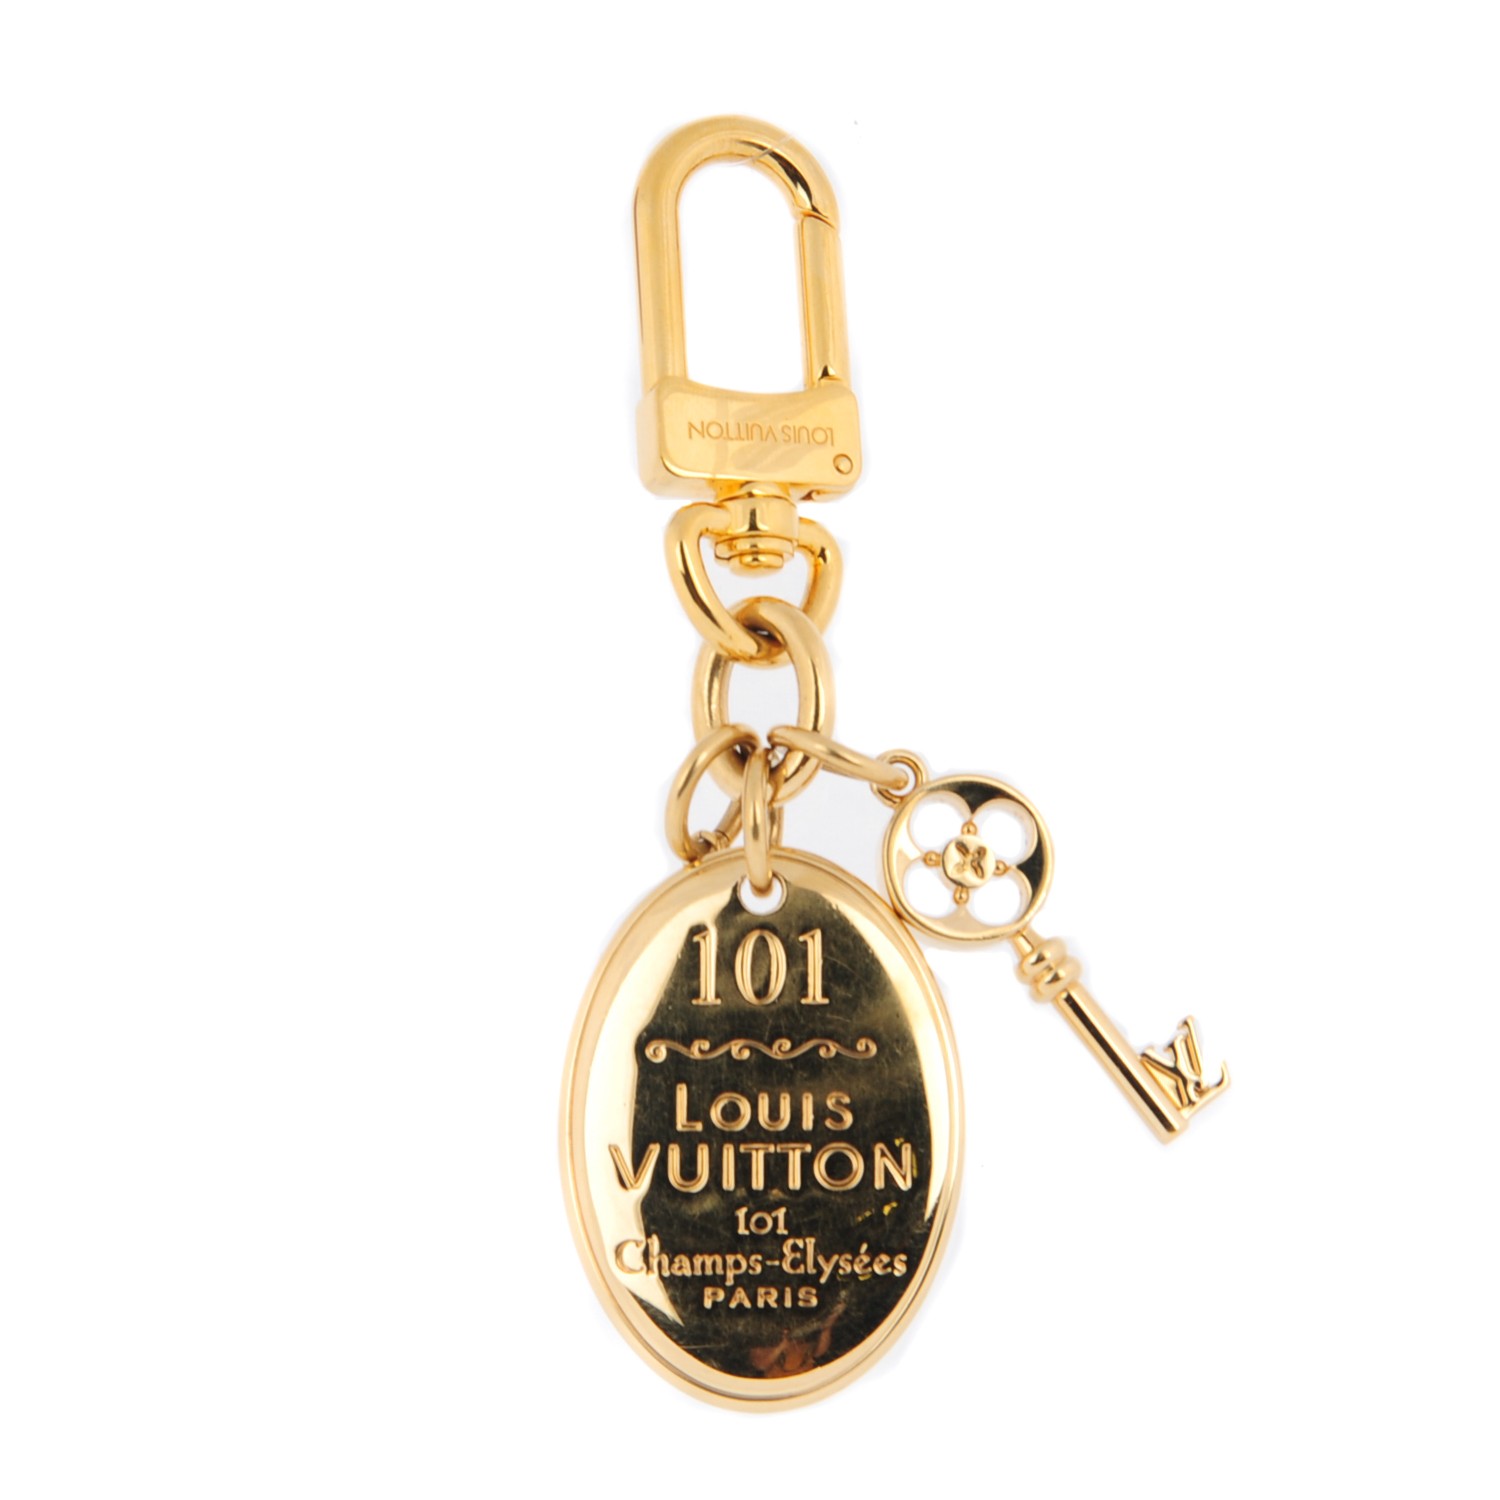 LOUIS VUITTON 101 Champs Elysees Maison Key Holder Gold 127322